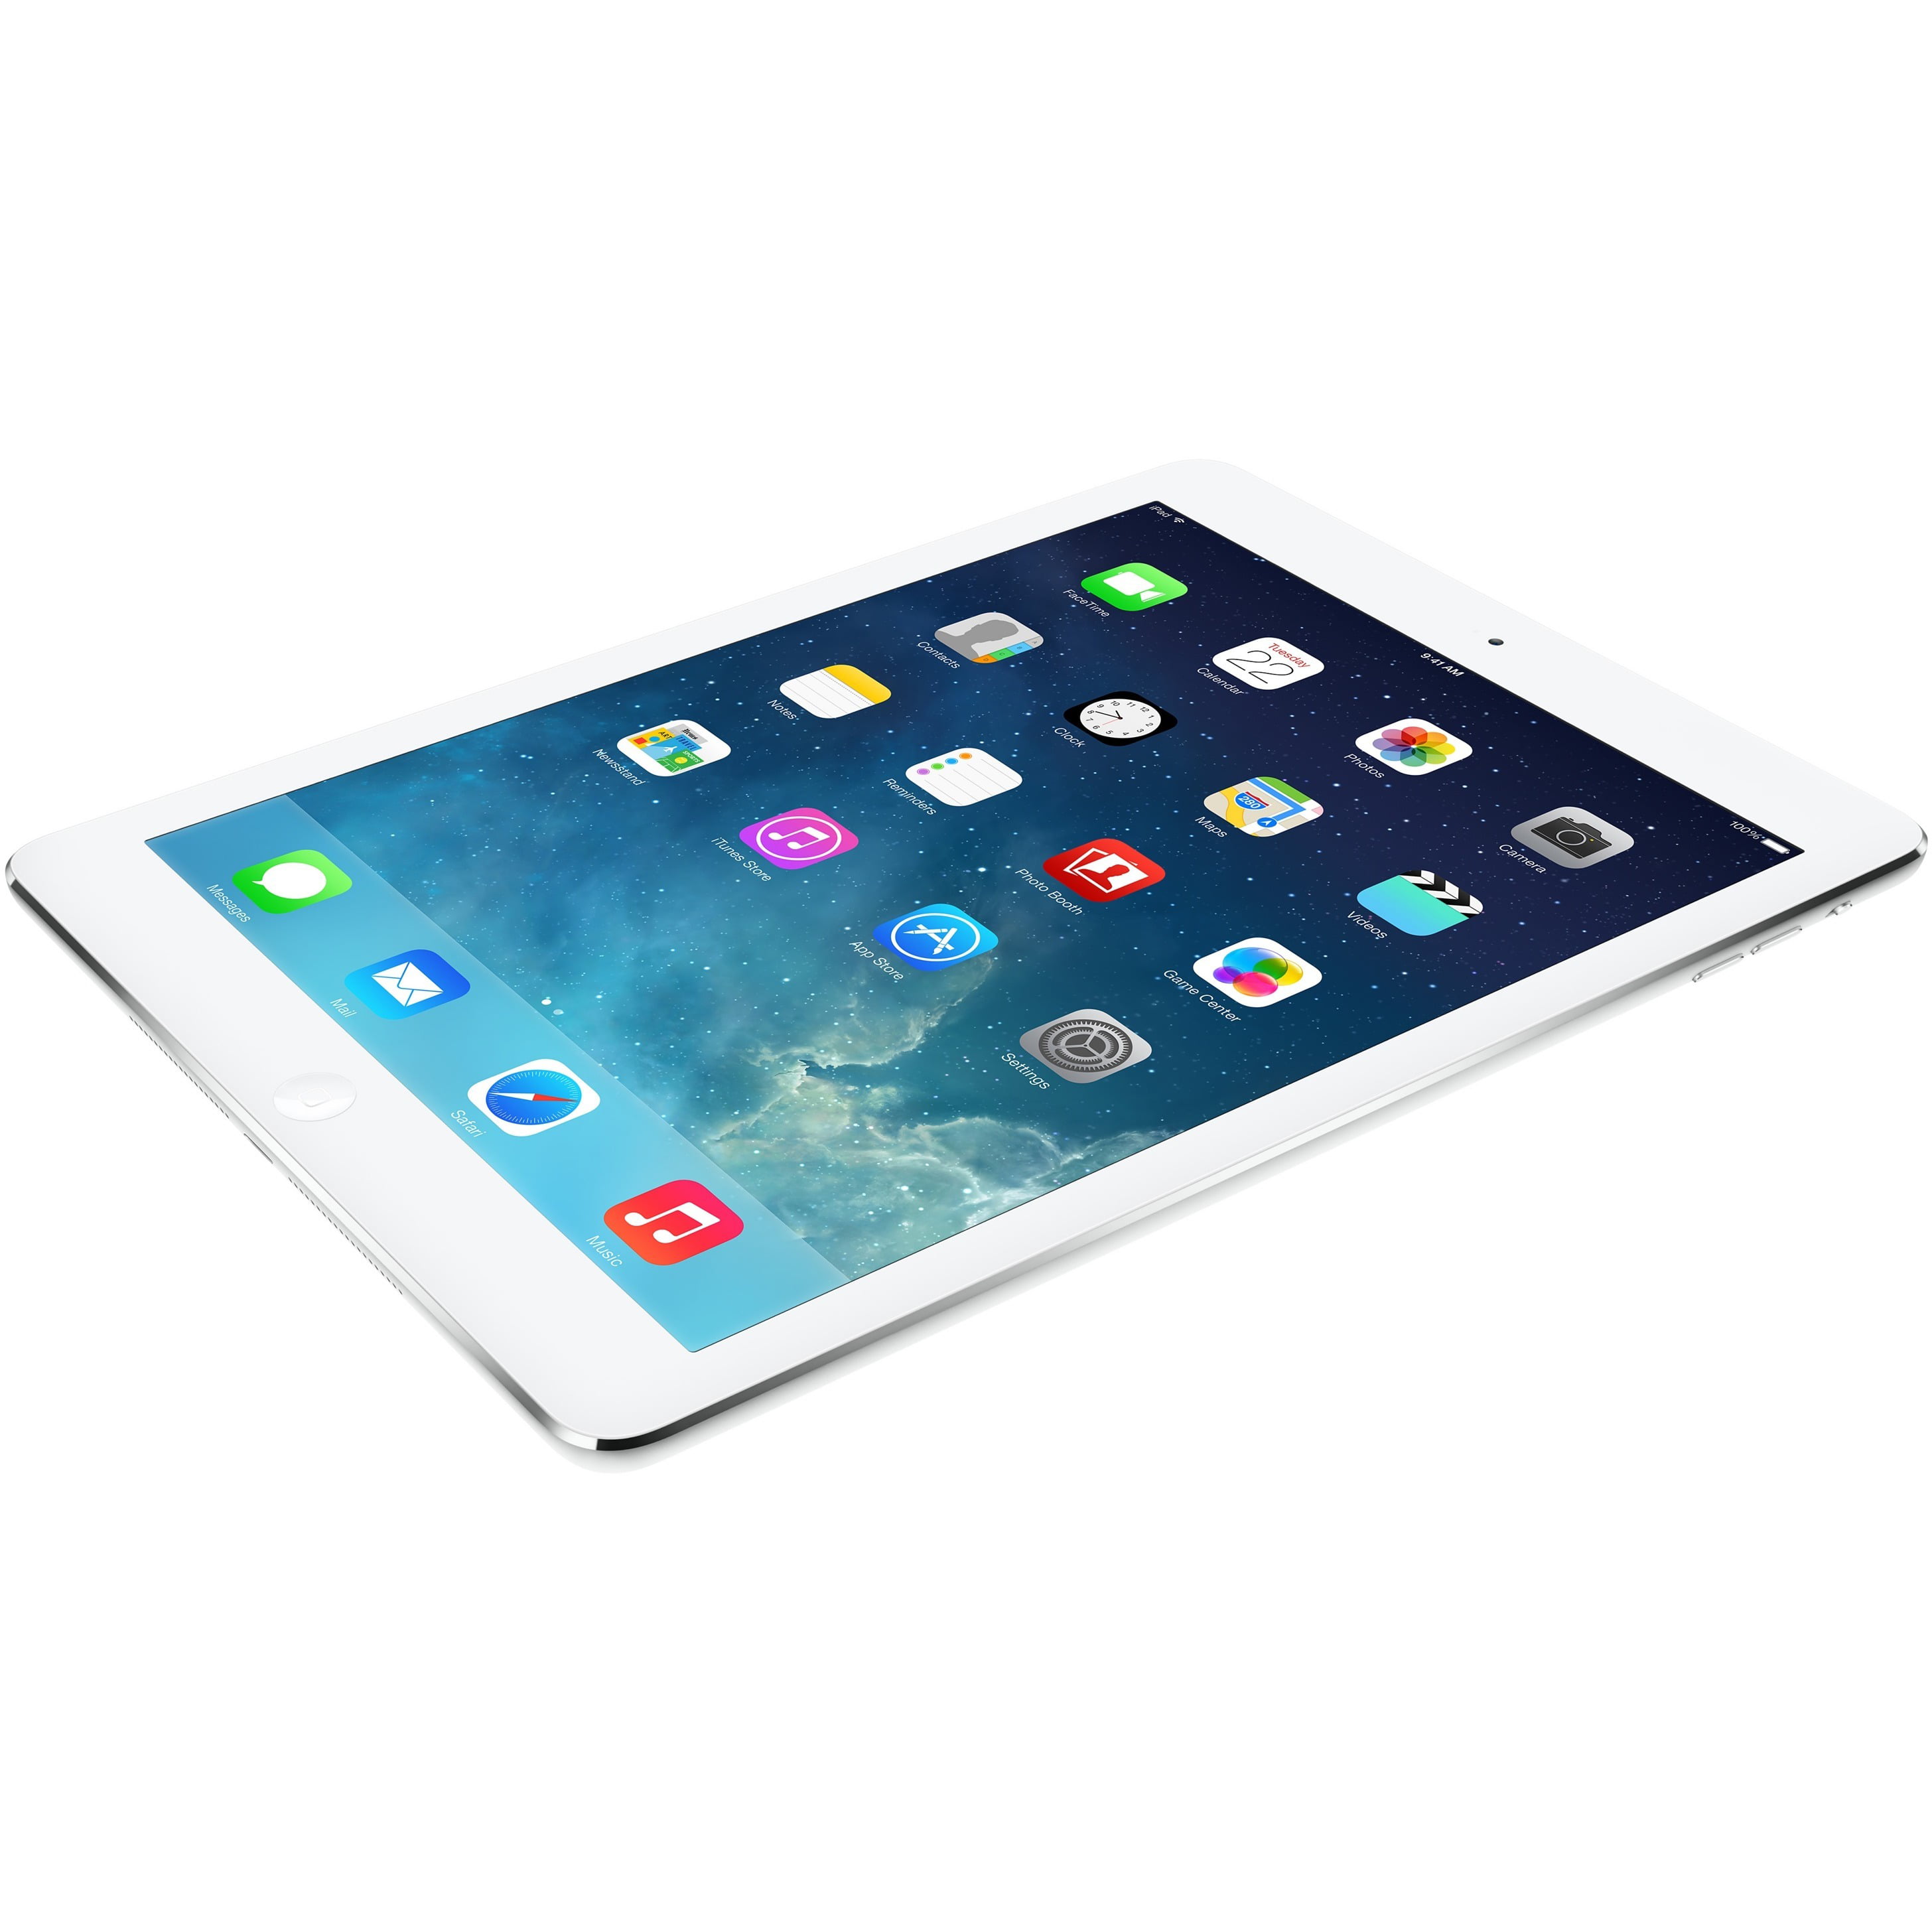 iPad Air Tablet - Walmart.com - Walmart.com